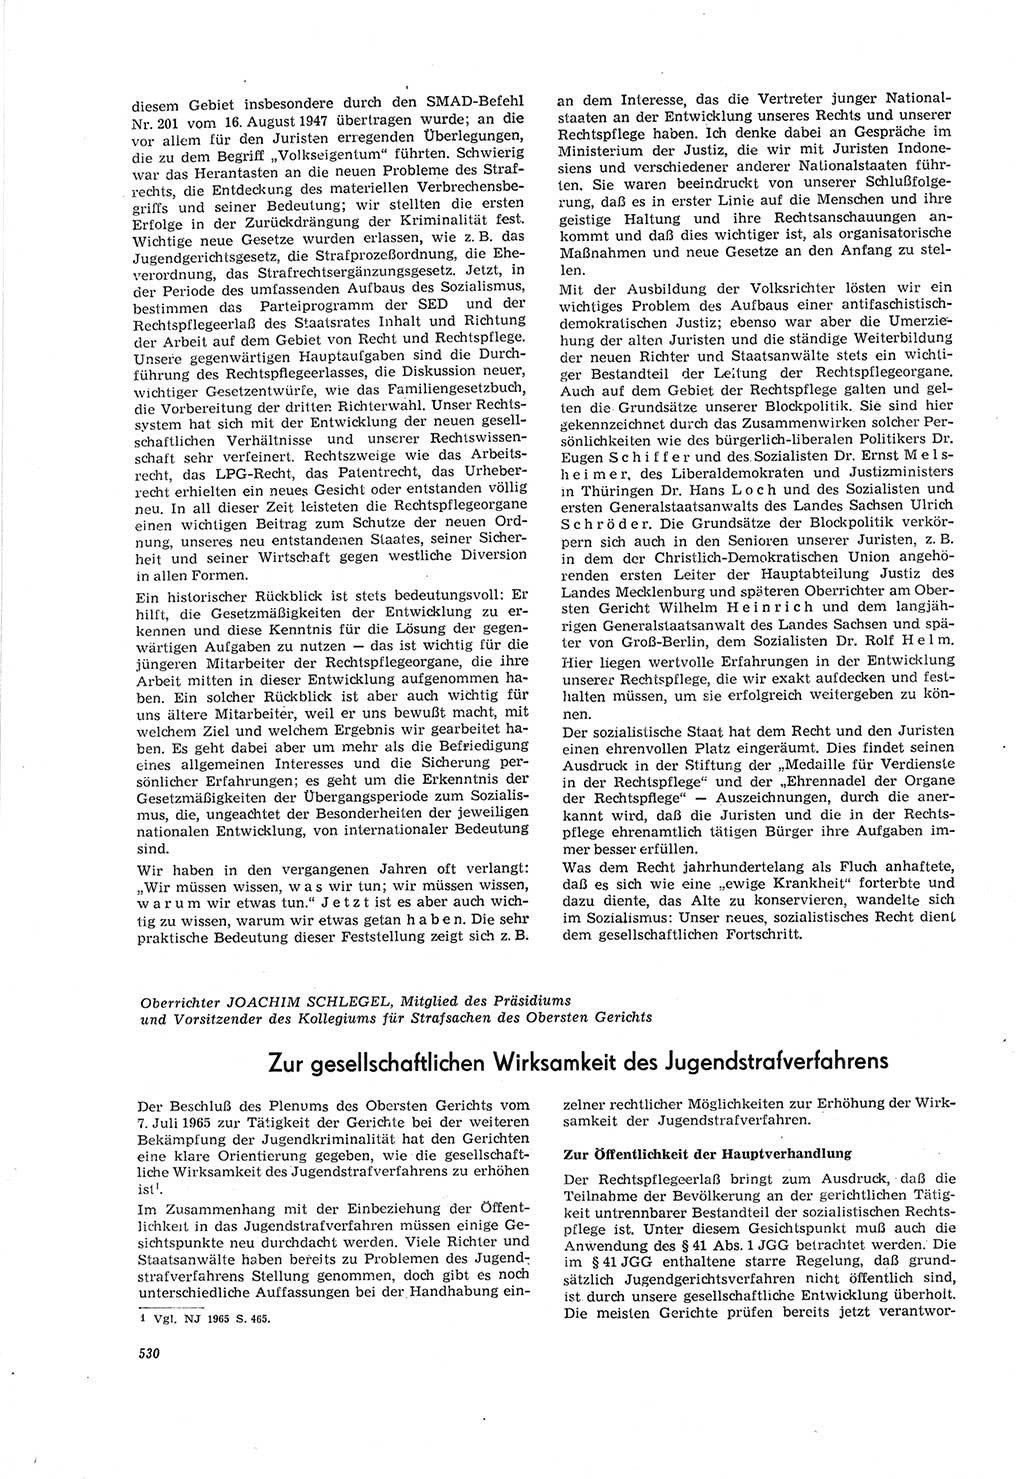 Neue Justiz (NJ), Zeitschrift für Recht und Rechtswissenschaft [Deutsche Demokratische Republik (DDR)], 19. Jahrgang 1965, Seite 530 (NJ DDR 1965, S. 530)